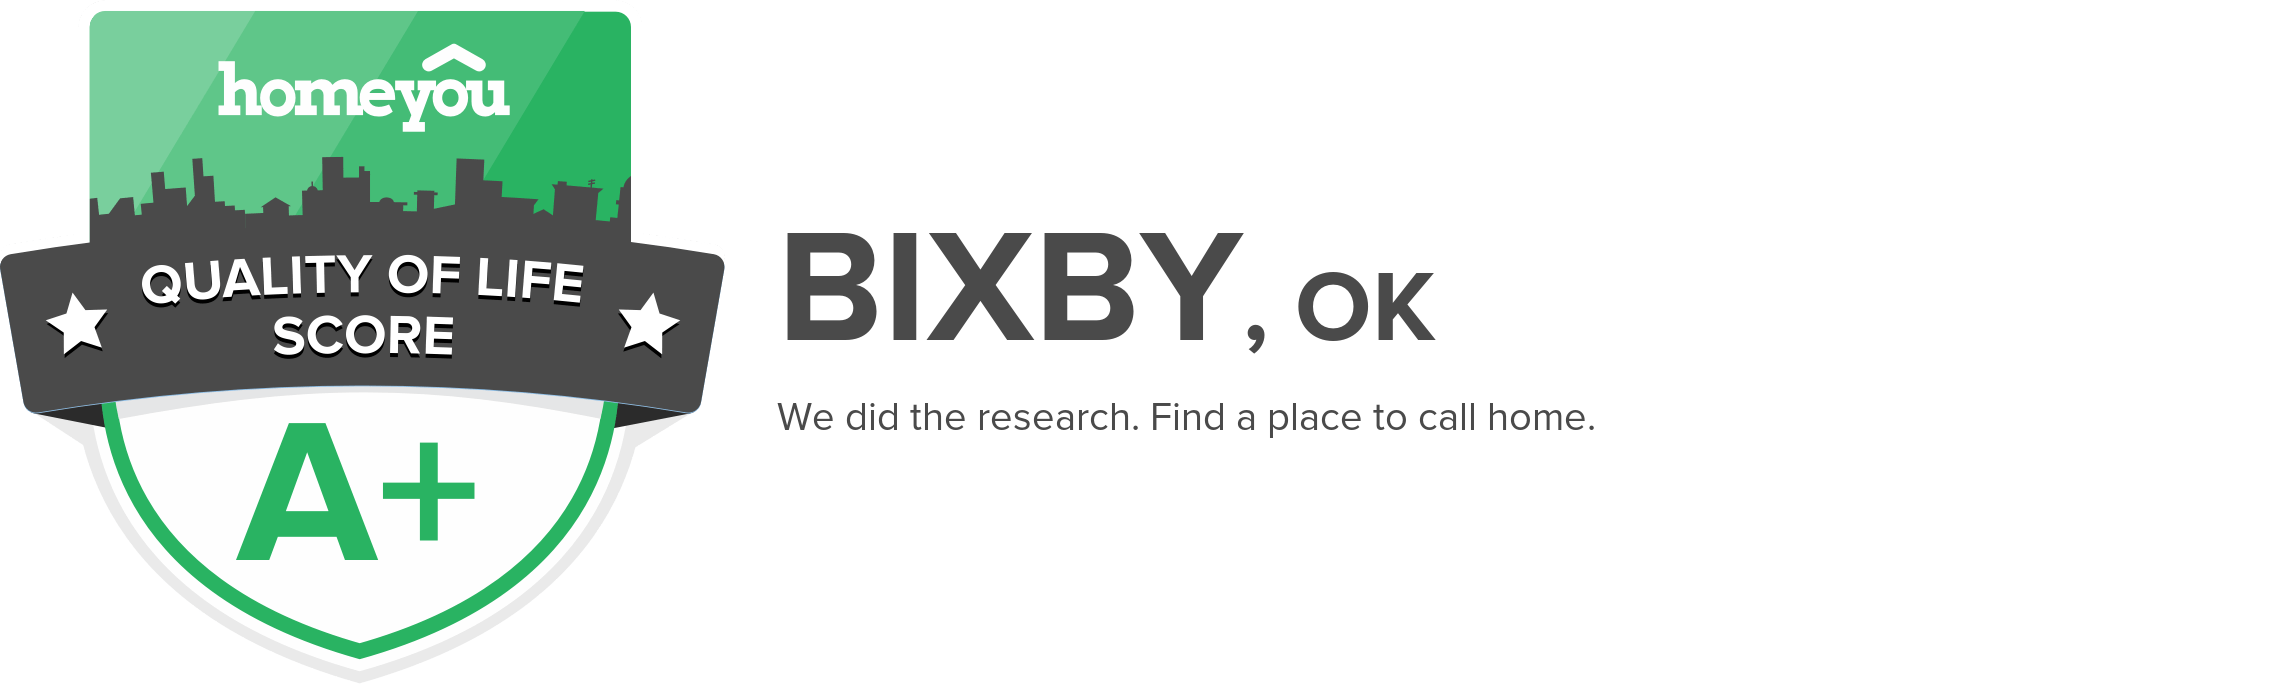 Bixby, OK